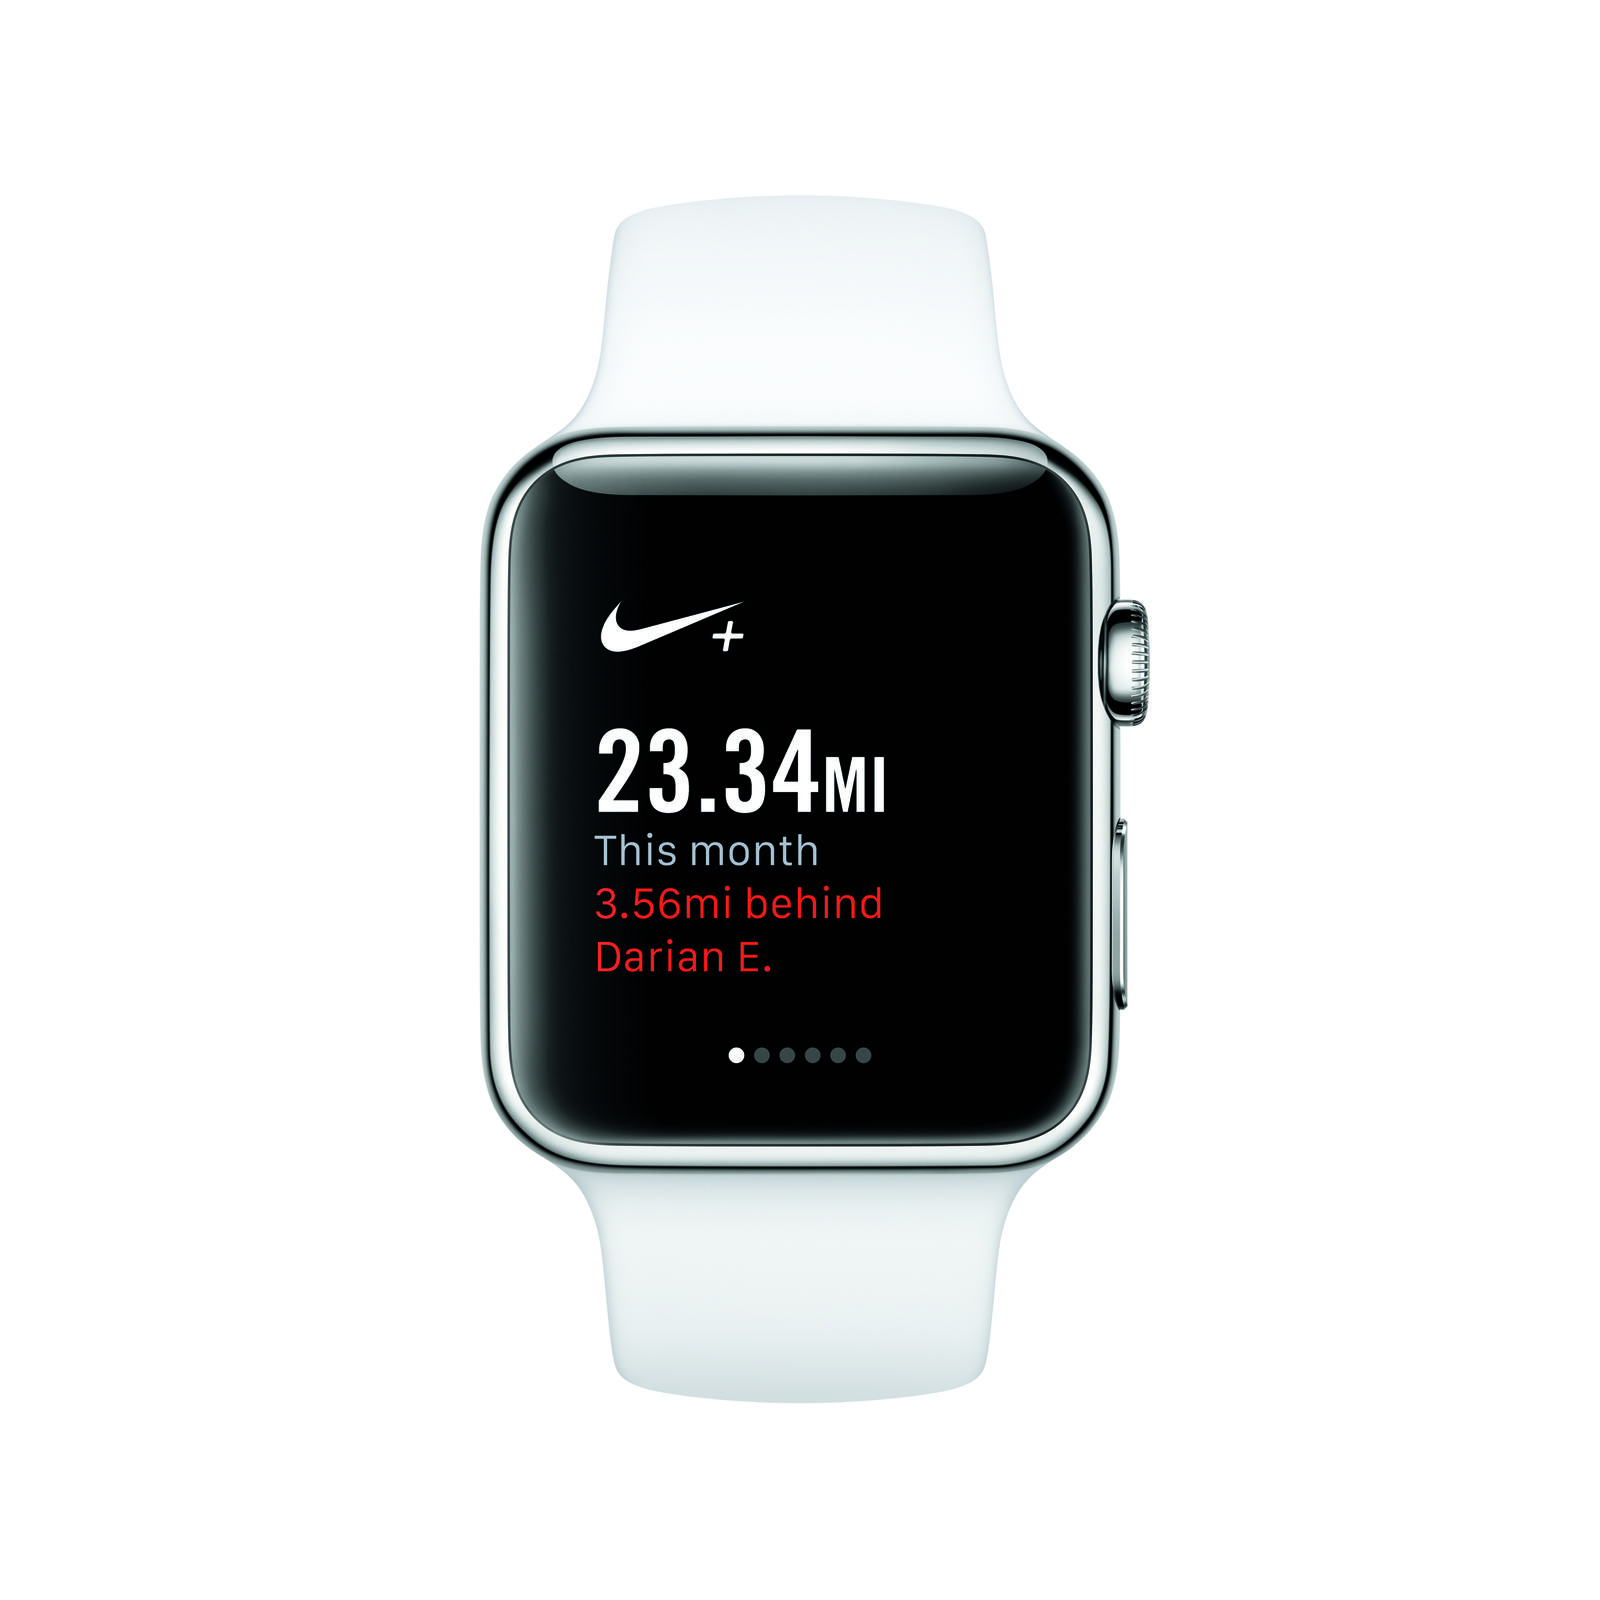 L'application Nike+ Running sur la montre connectée Apple Watch